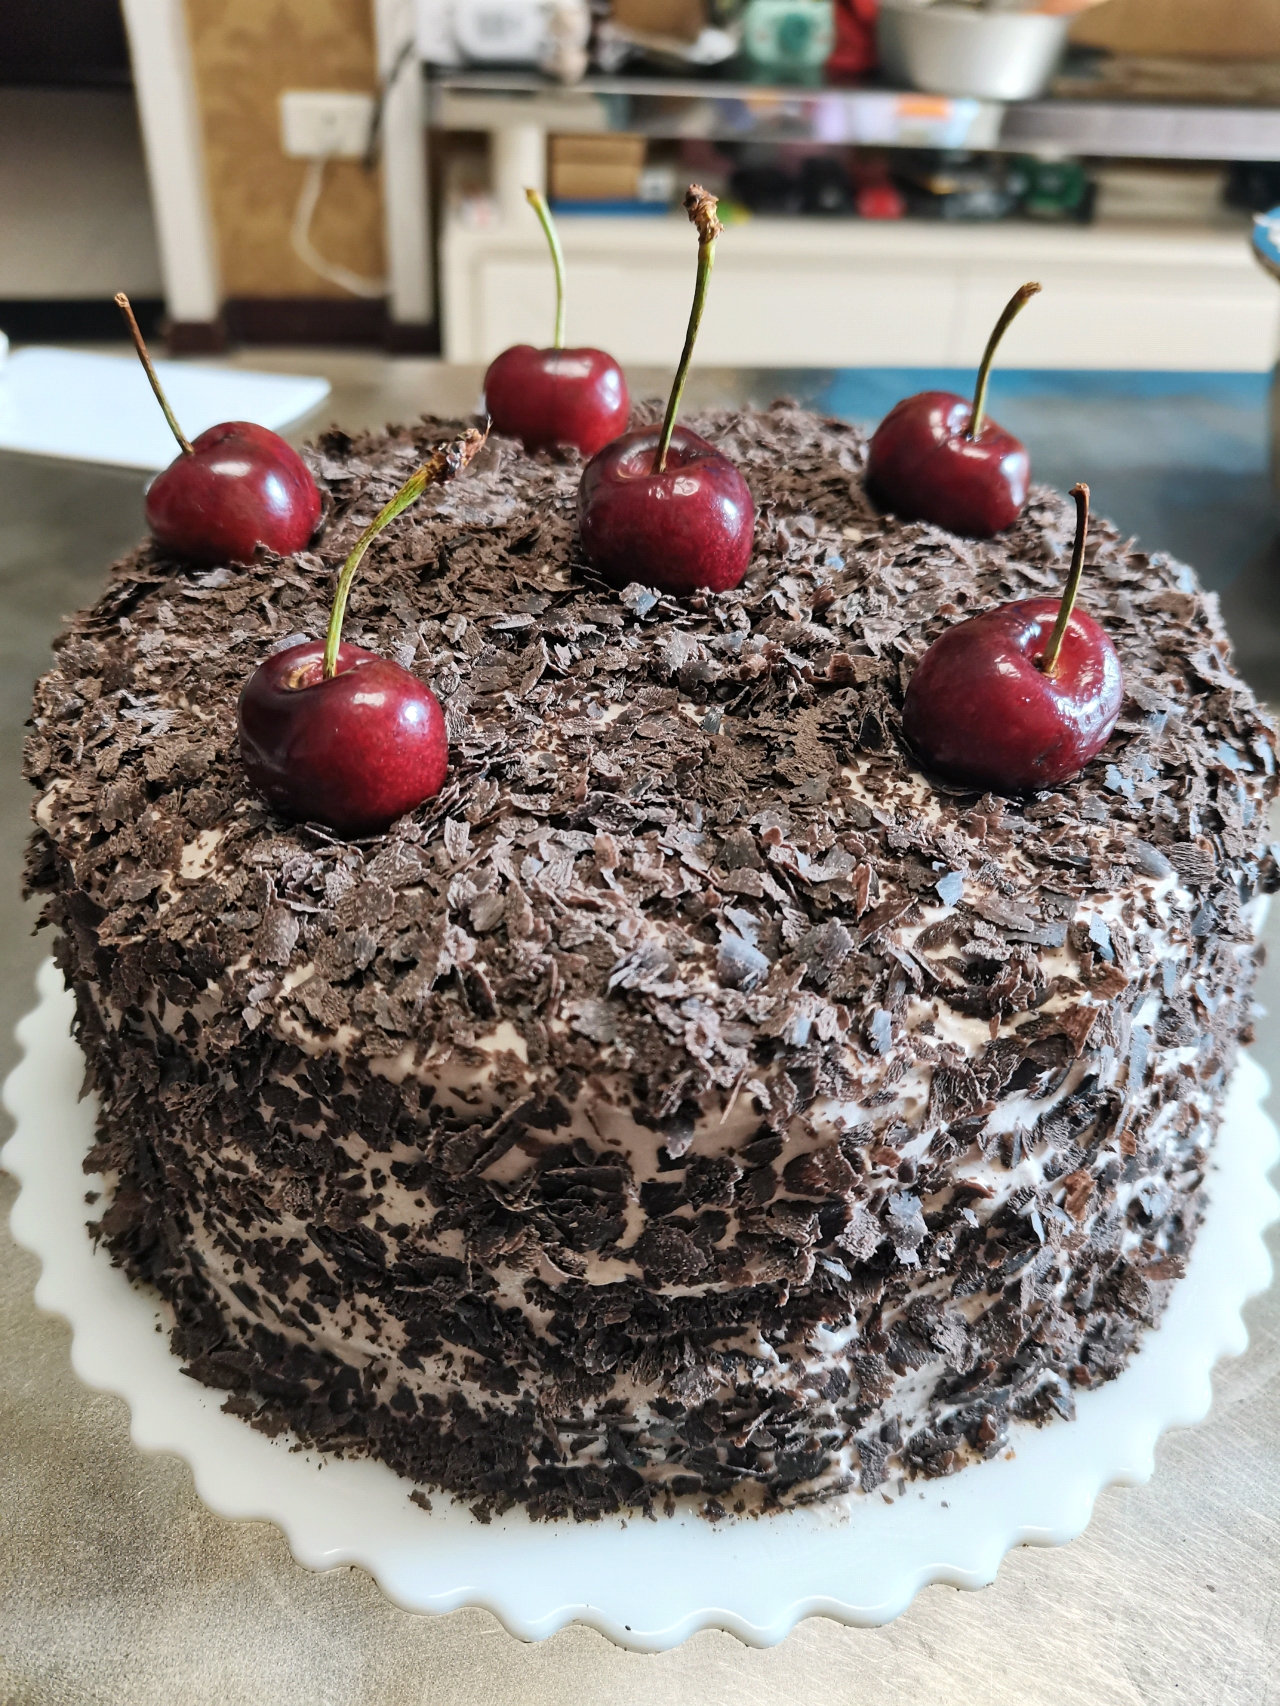 欲罢不能的巧克力三重奏—黑森林蛋糕